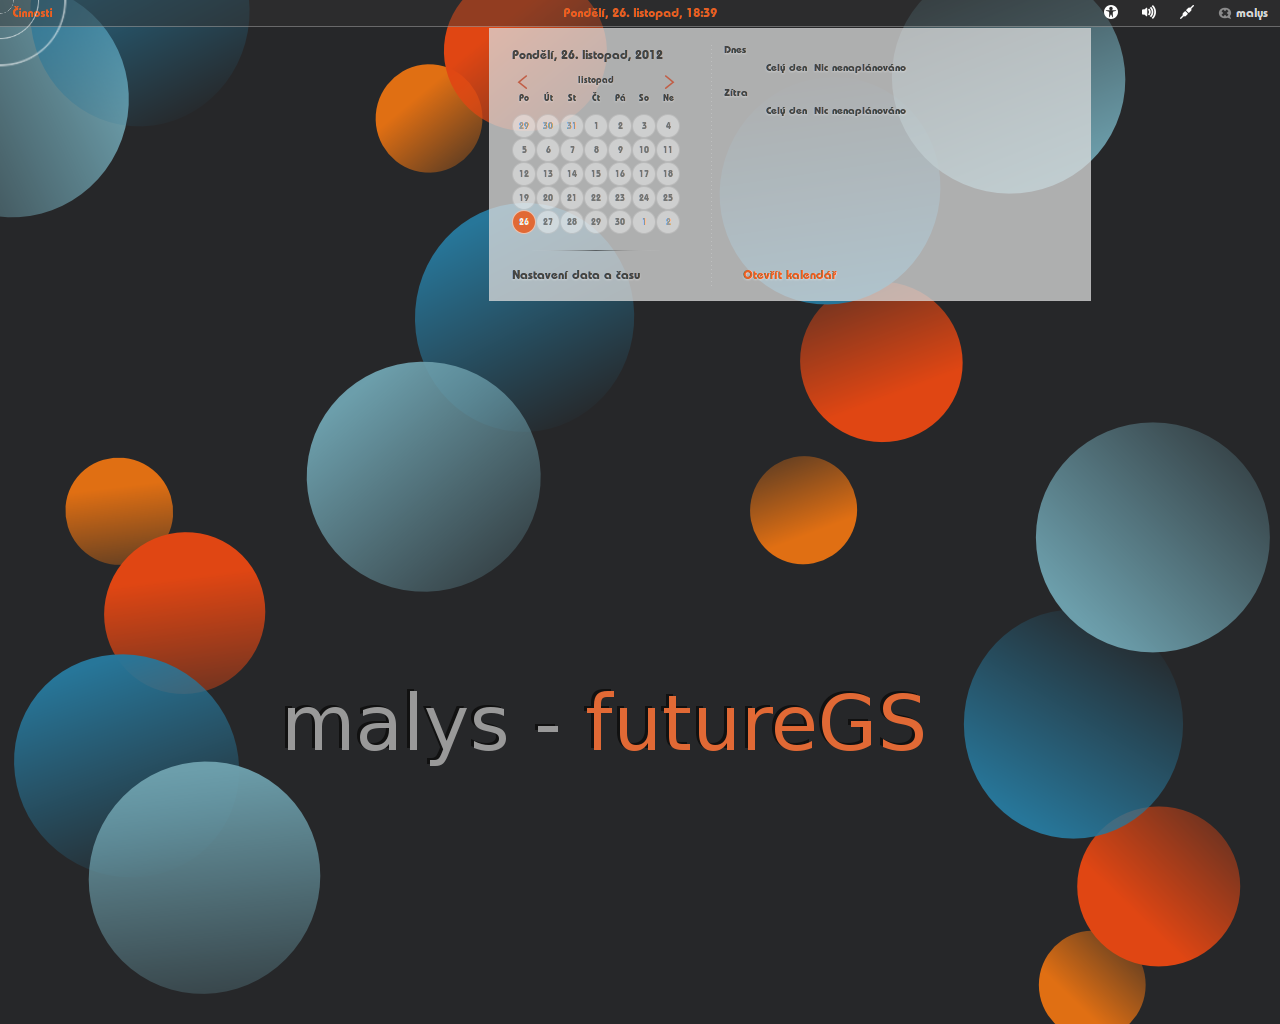 malys - futureGS